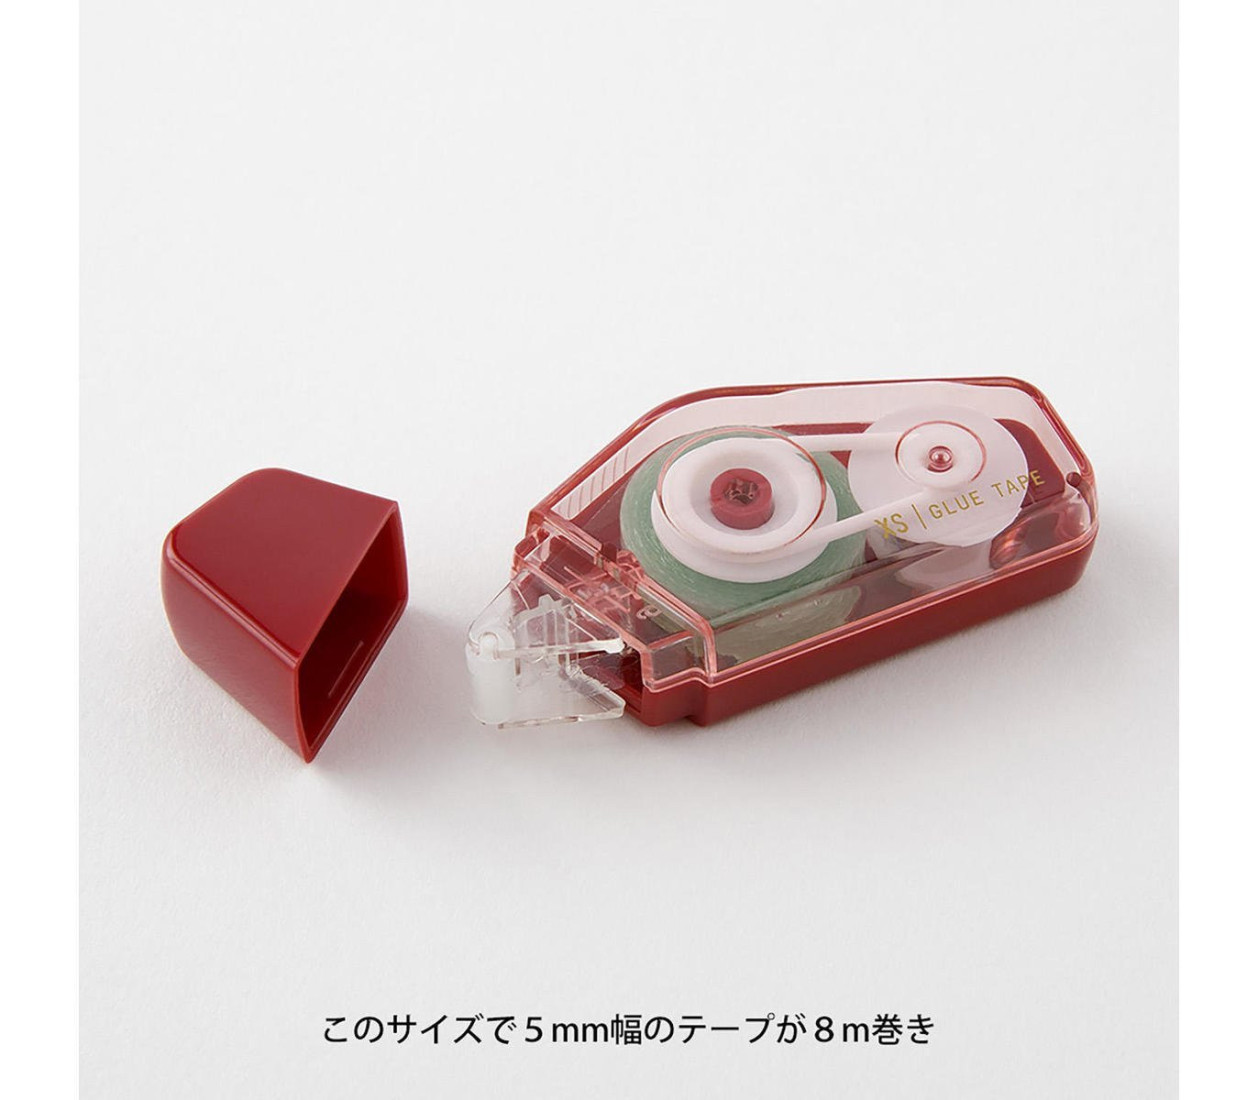 Midori XS (extra small) Glue Tape 5mm x 8m Dark Red 35520006